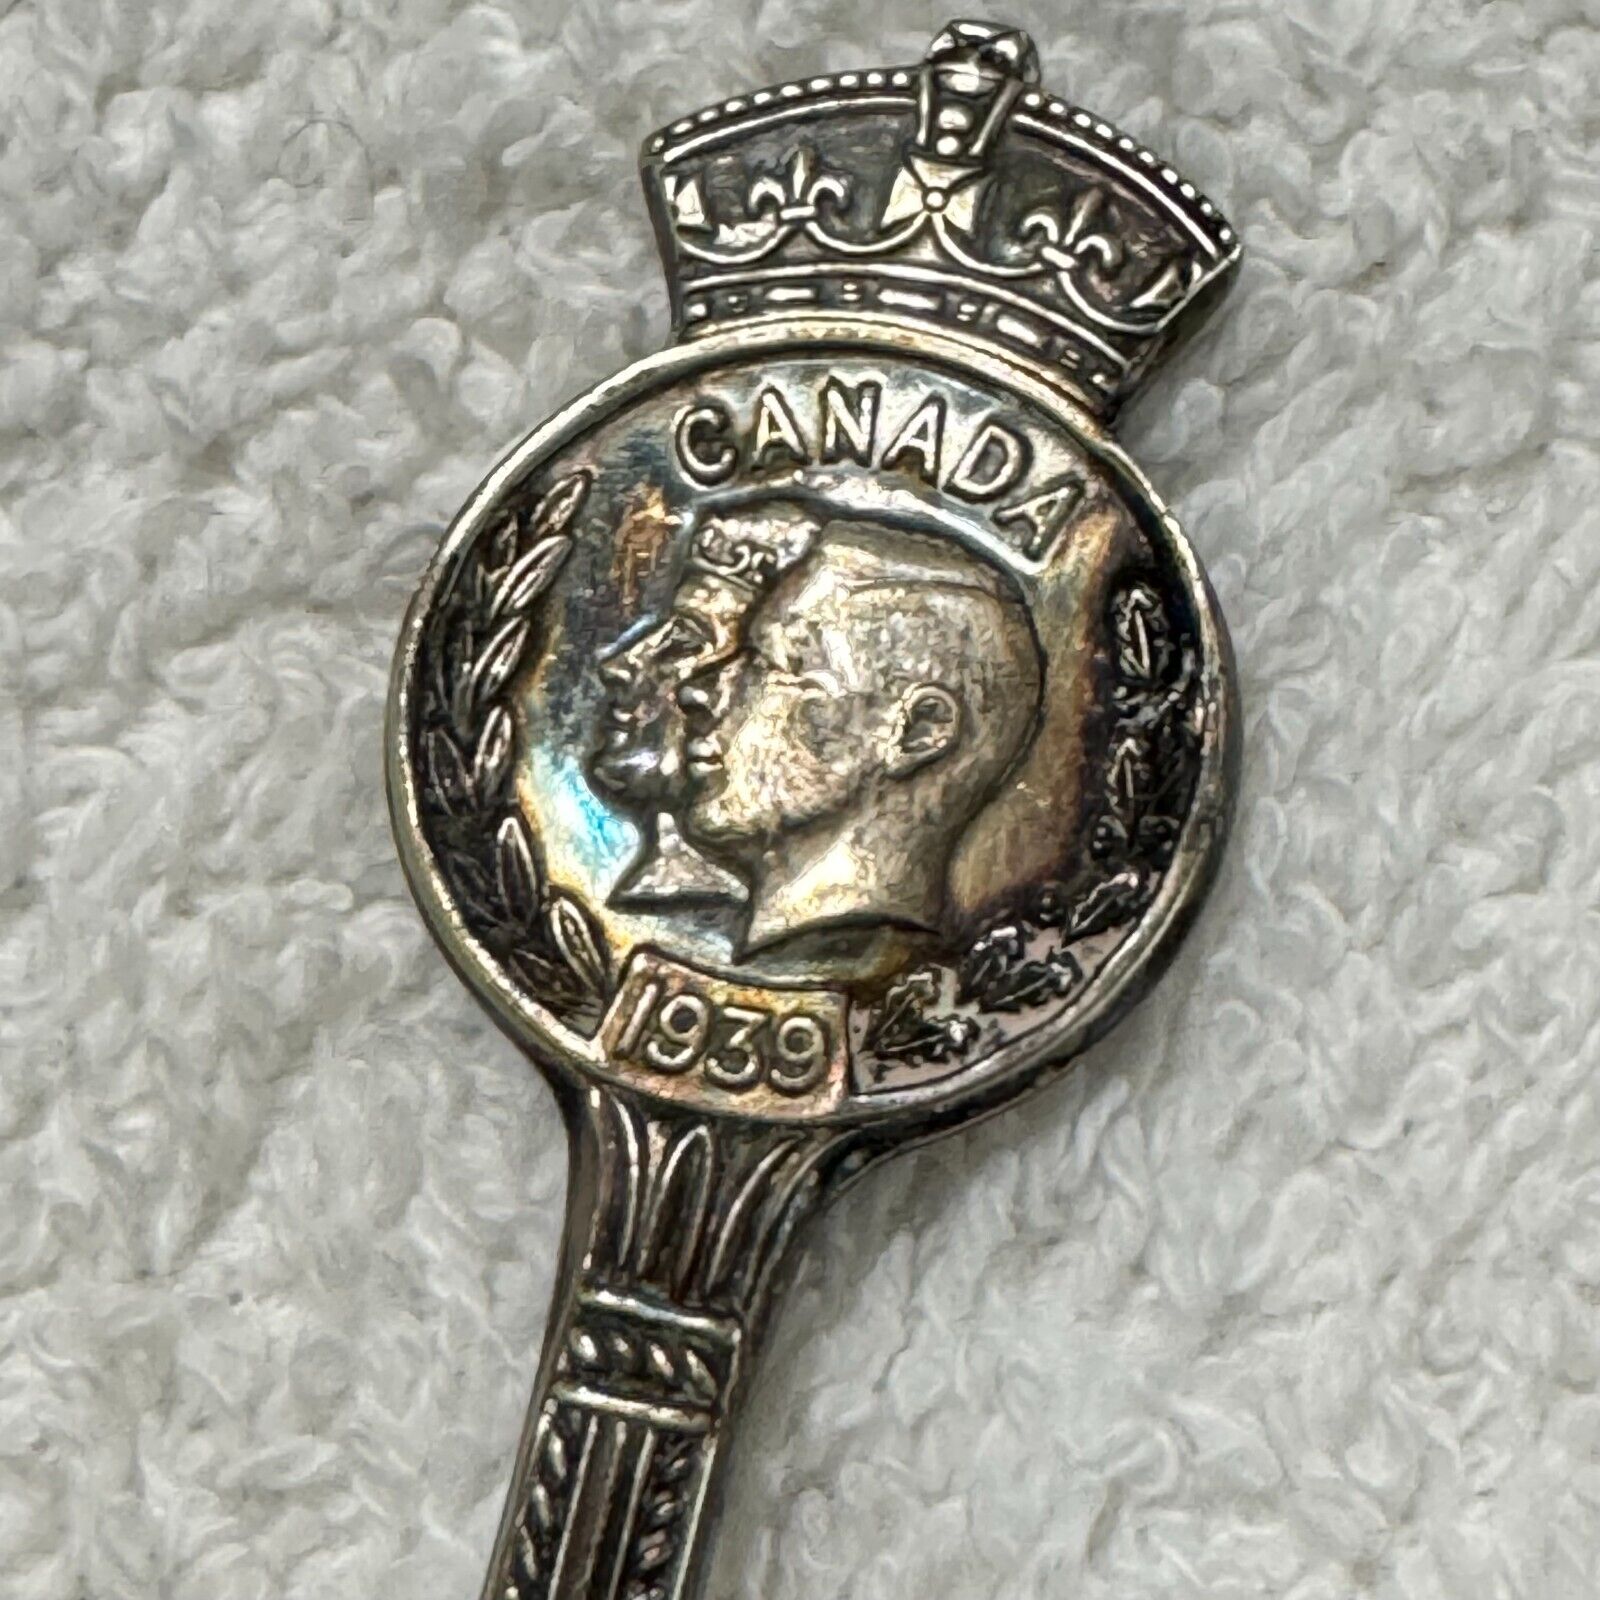 Vintage Souvenir Spoon Collectible George VI Queen Elizabeth Canada 1939 Rogers